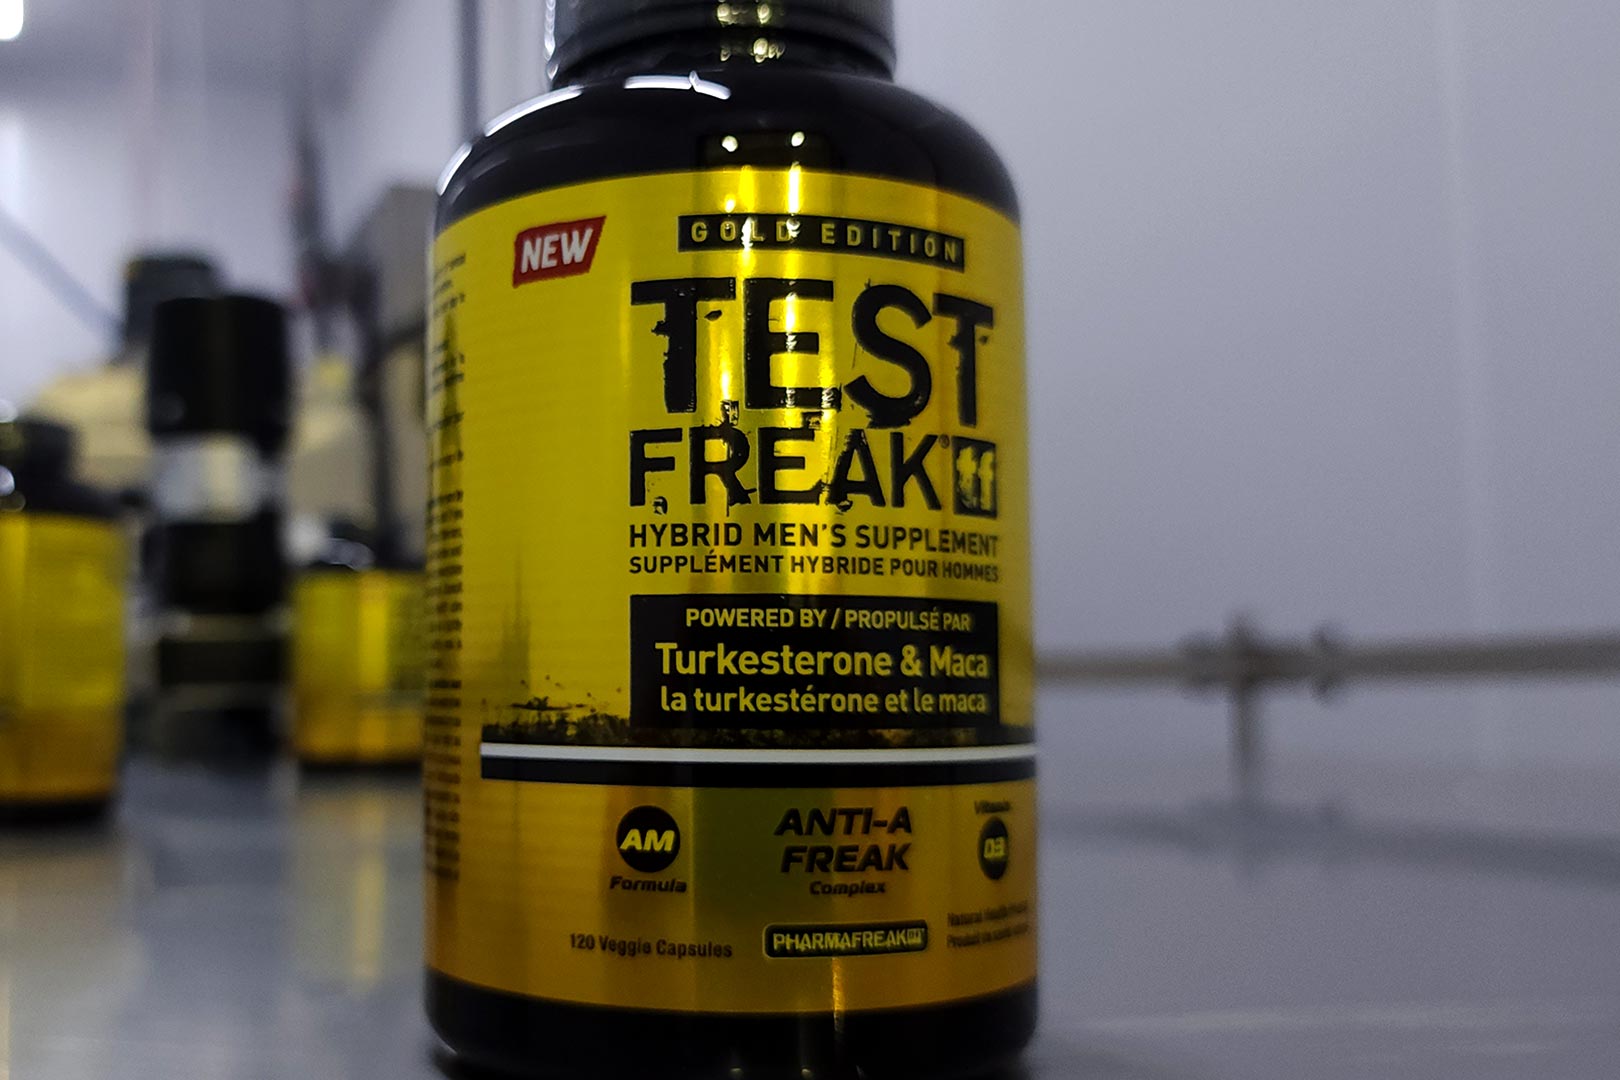 Where To Buy Pharmafreak Test Freak Gold Edition